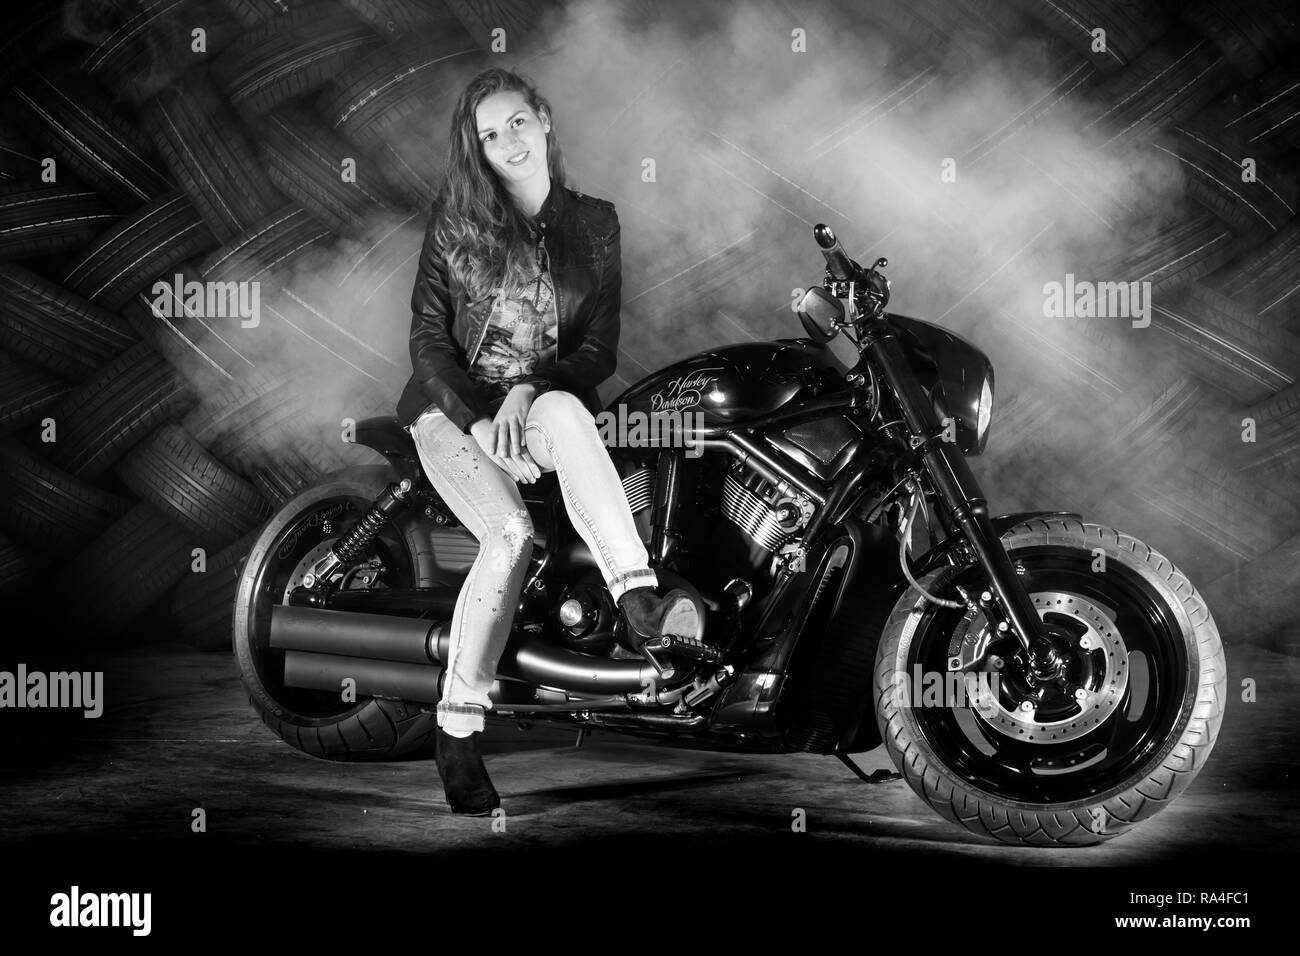 Femme dans un manteau de cuir assis sur une moto, Harley Davidson, monochrome, Allemagne Banque D'Images